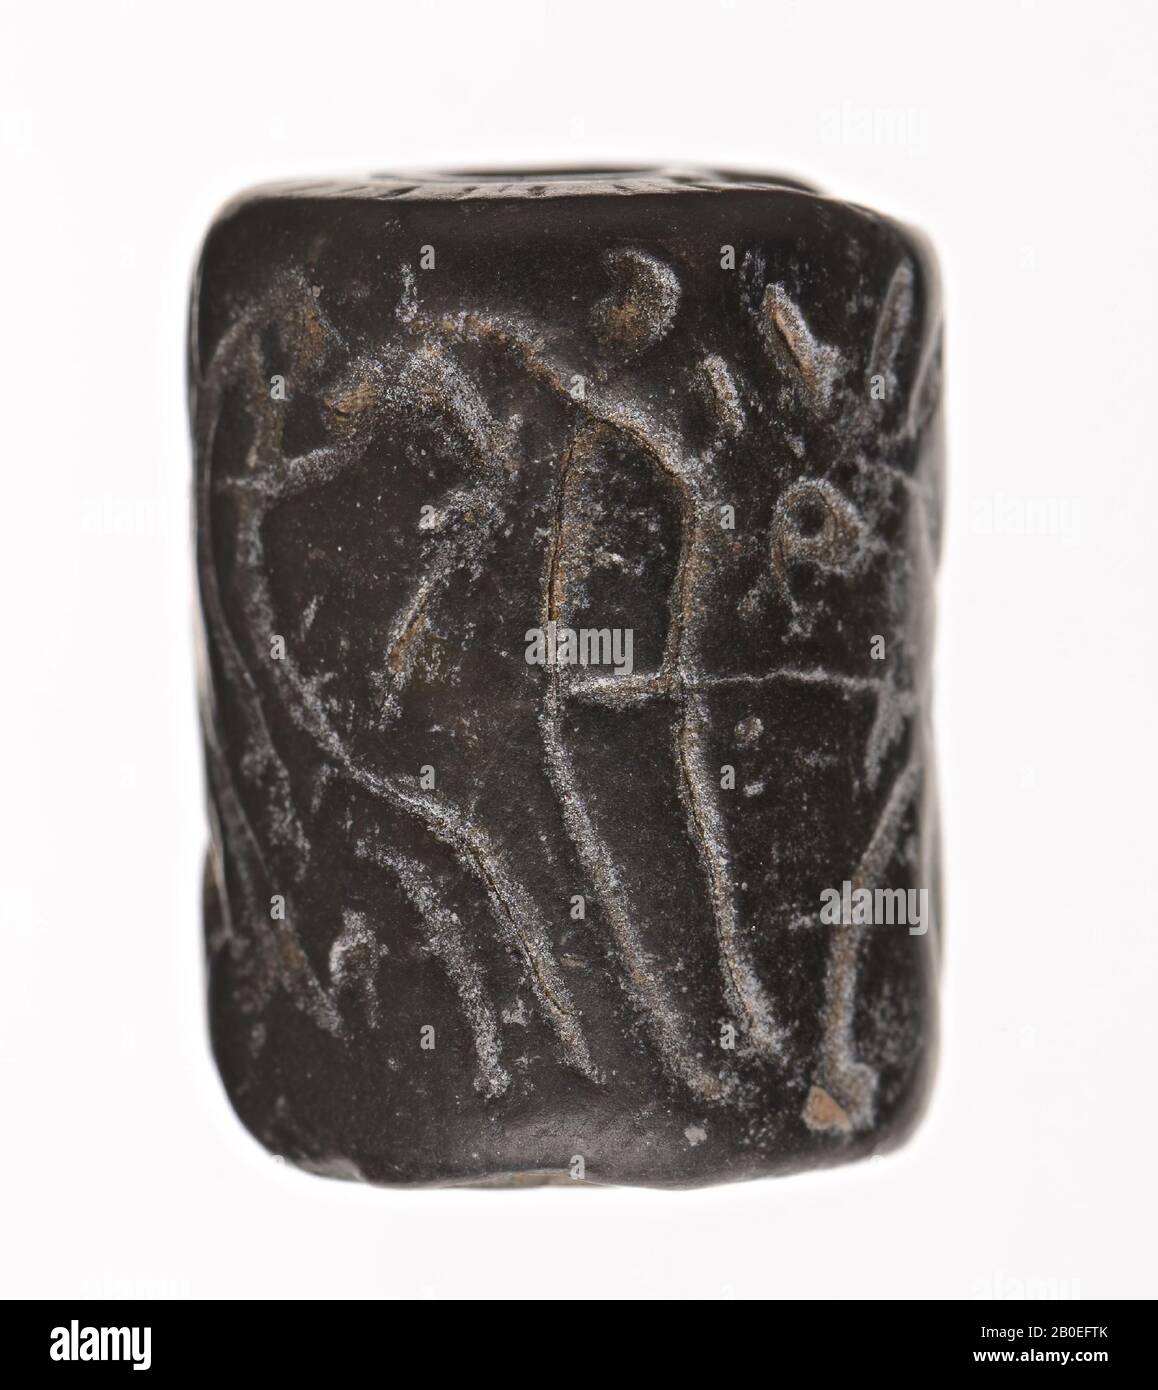 Un joint de cylindre en pierre avec une représentation linéaire incertaine de l'homme et de la bête avec un arbre stylisé? Faux possible, phoque, pierre, H 1,7 cm, D 1,3 cm, Iran Banque D'Images